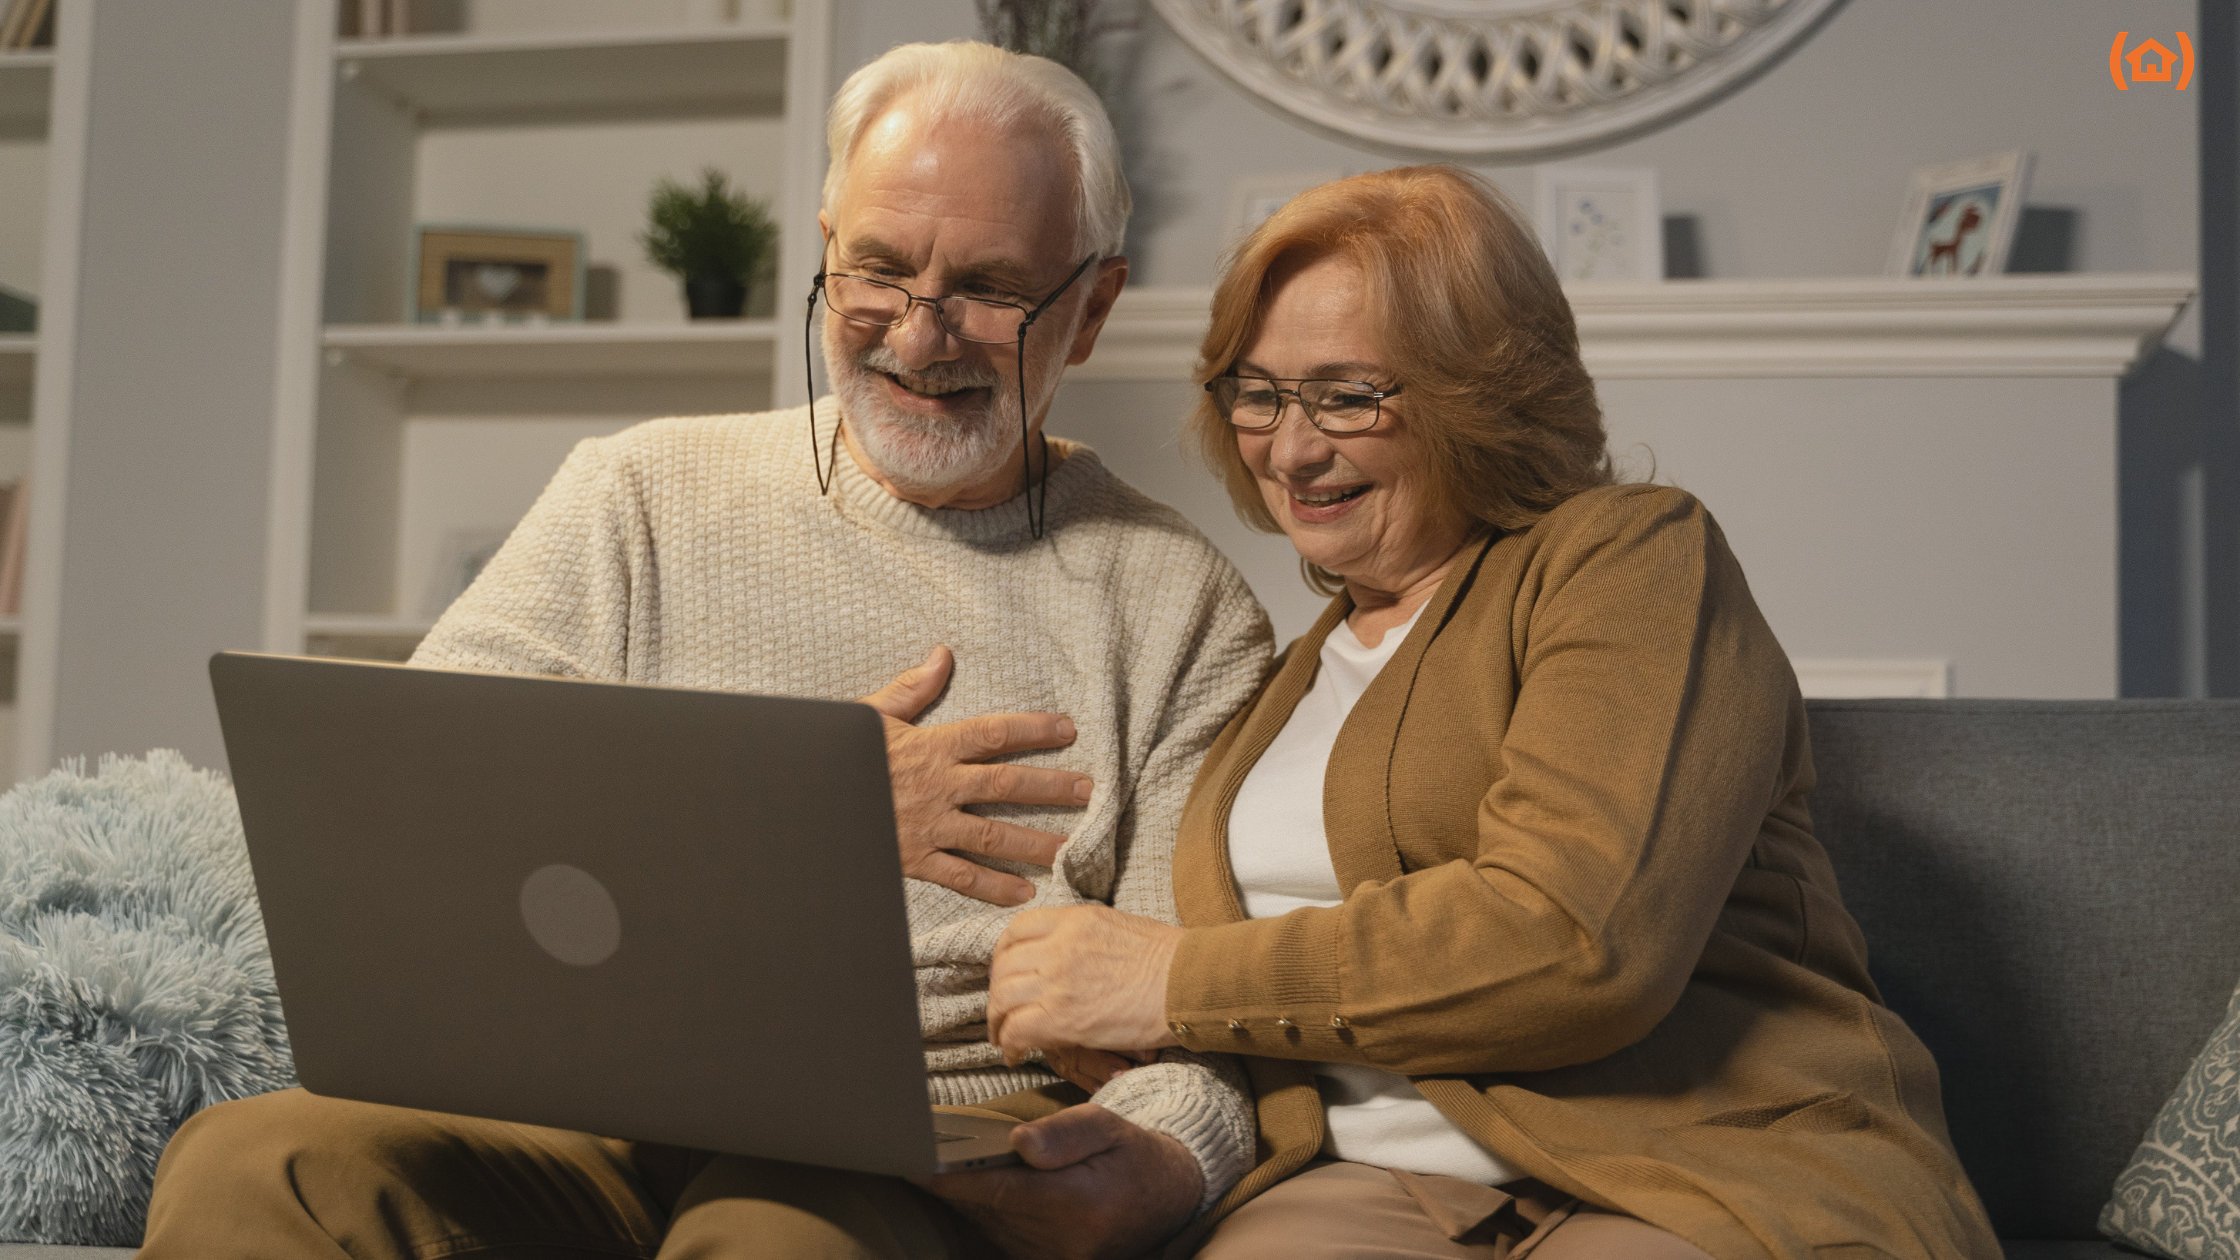 Beneficios de las nuevas tecnologías en las personas mayores